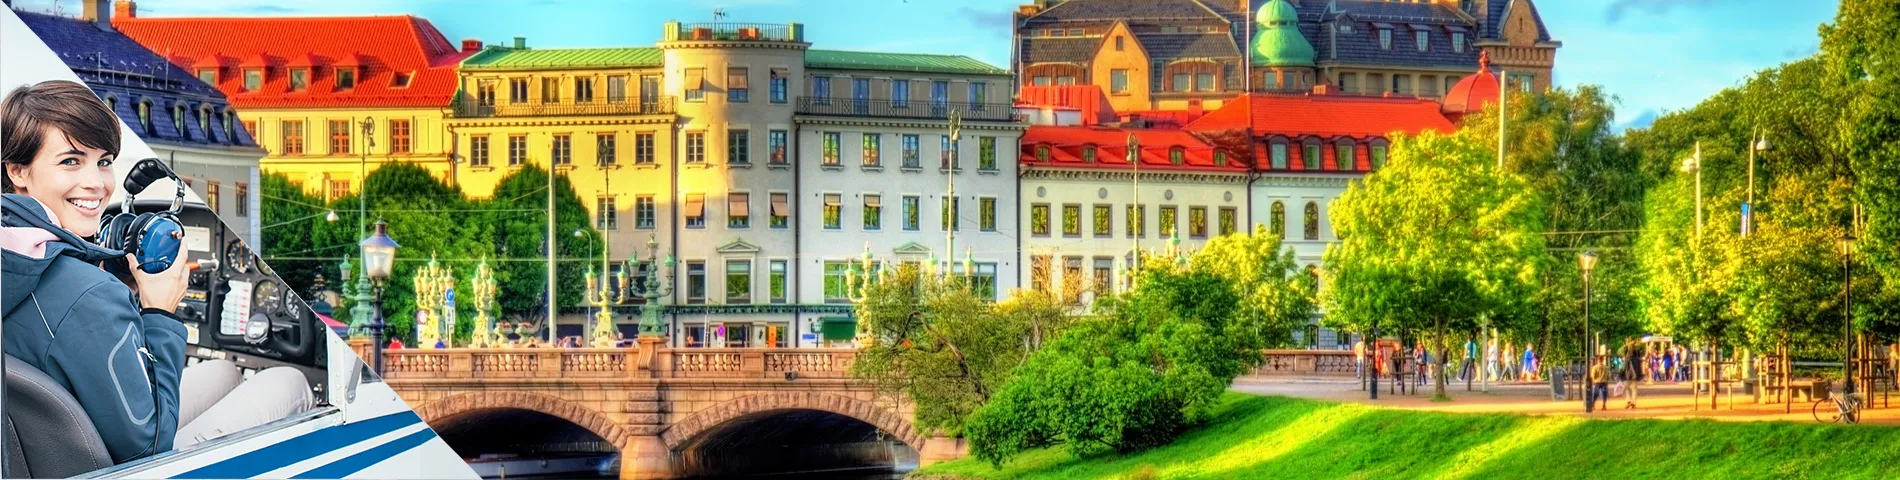 Göteborg - Švédština a Letectví